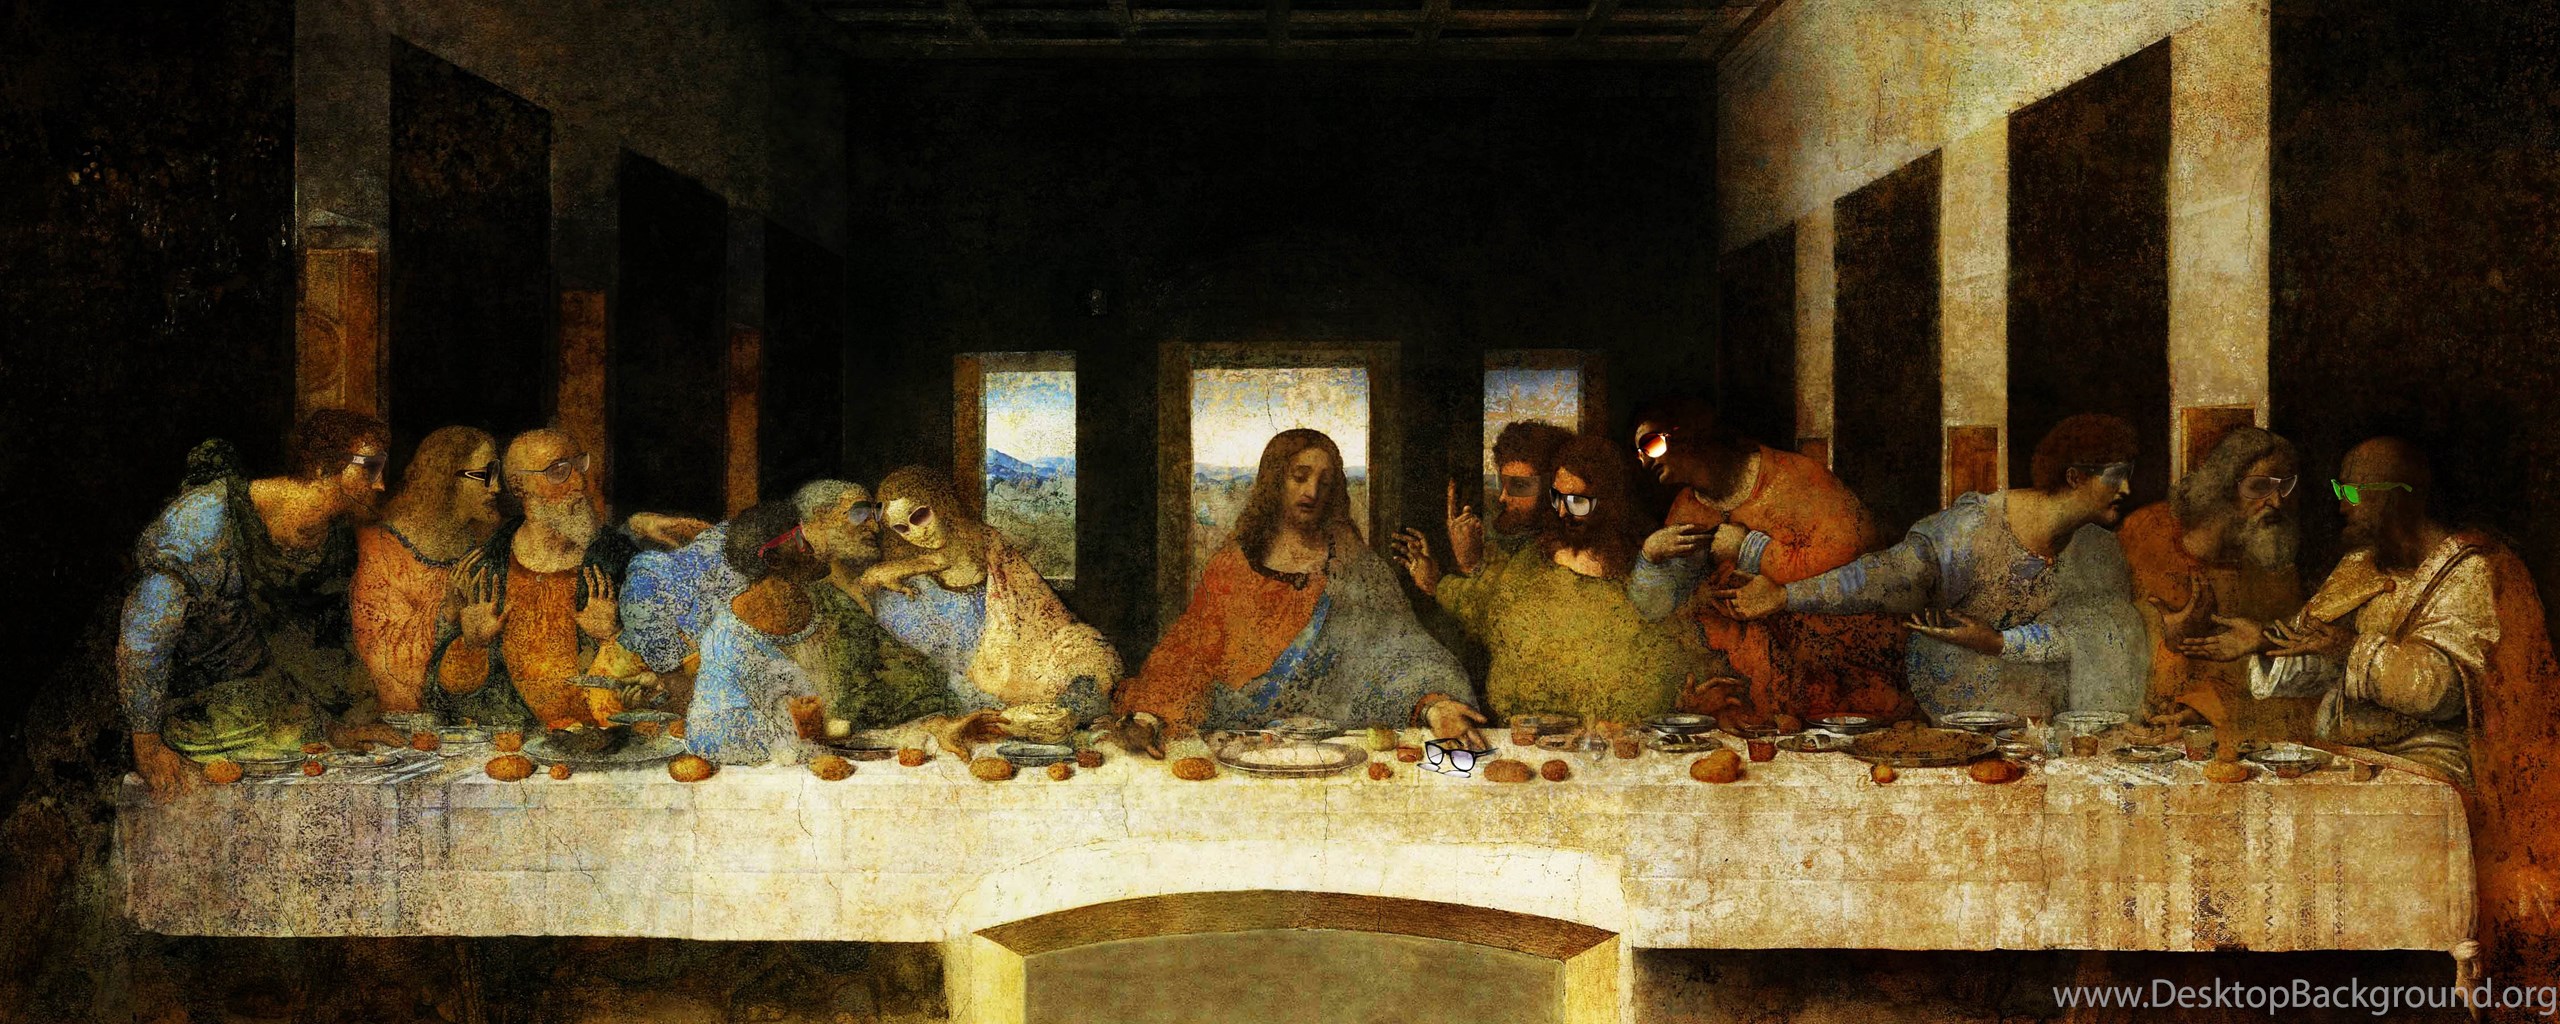 Время тайной вечери. Леонардо да Винчи «Тайная вечеря» 1495–1498.. Картина да Винчи Тайная вечеря. Тайна вечеря Леонардо да Винчи. Фреска Тайная вечеря Леонардо да Винчи.